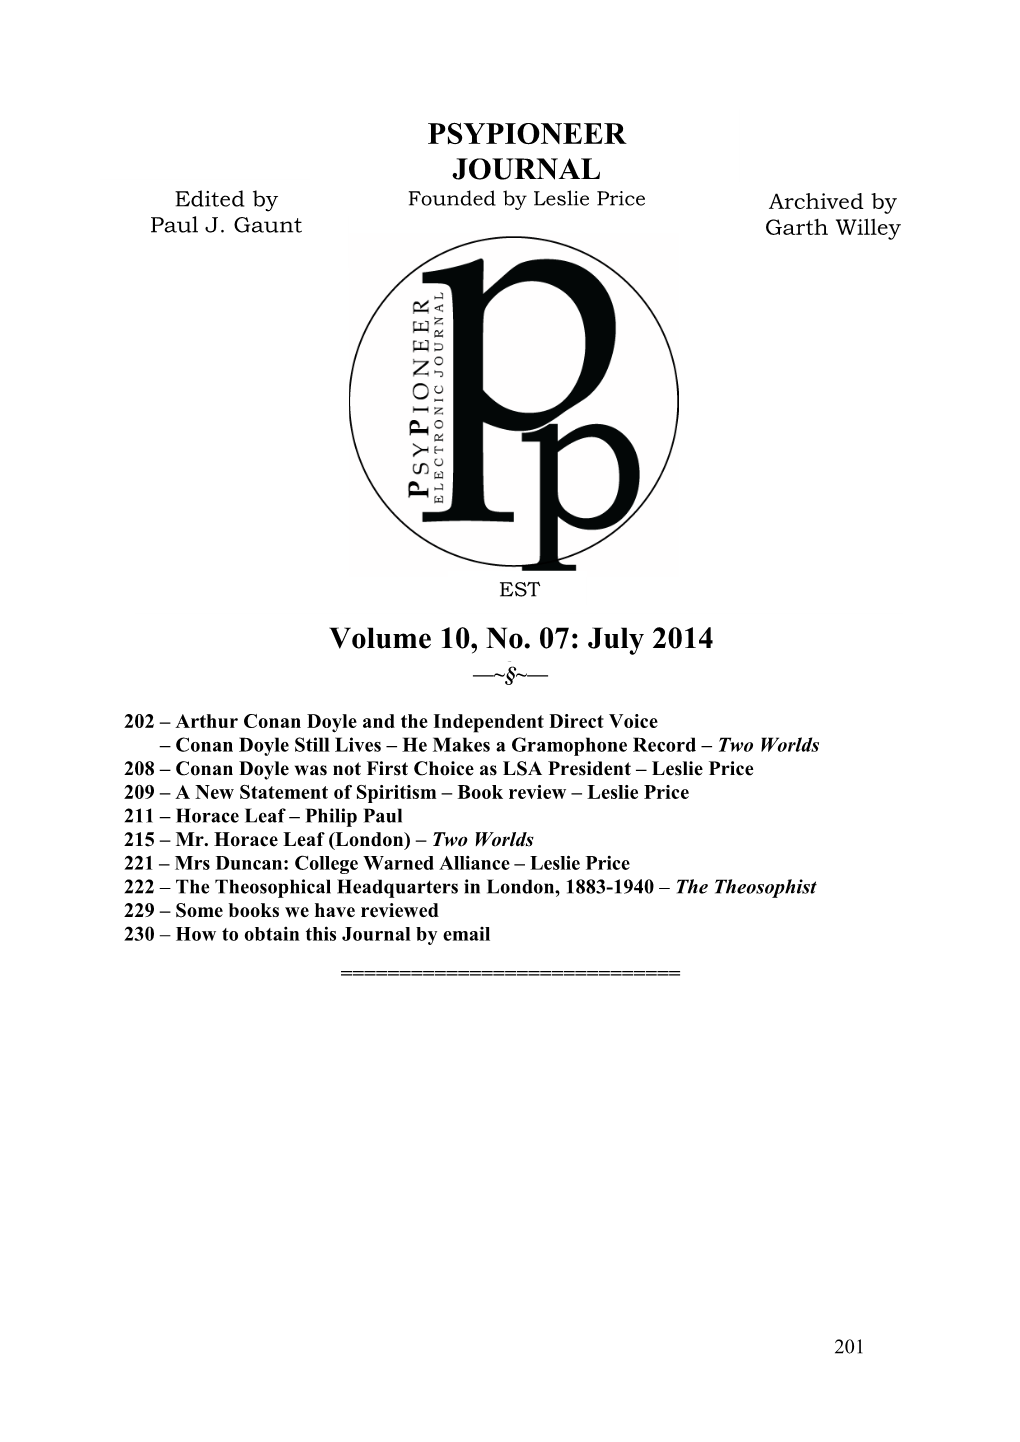 PSYPIONEER JOURNAL Volume 10, No. 07: July 2014